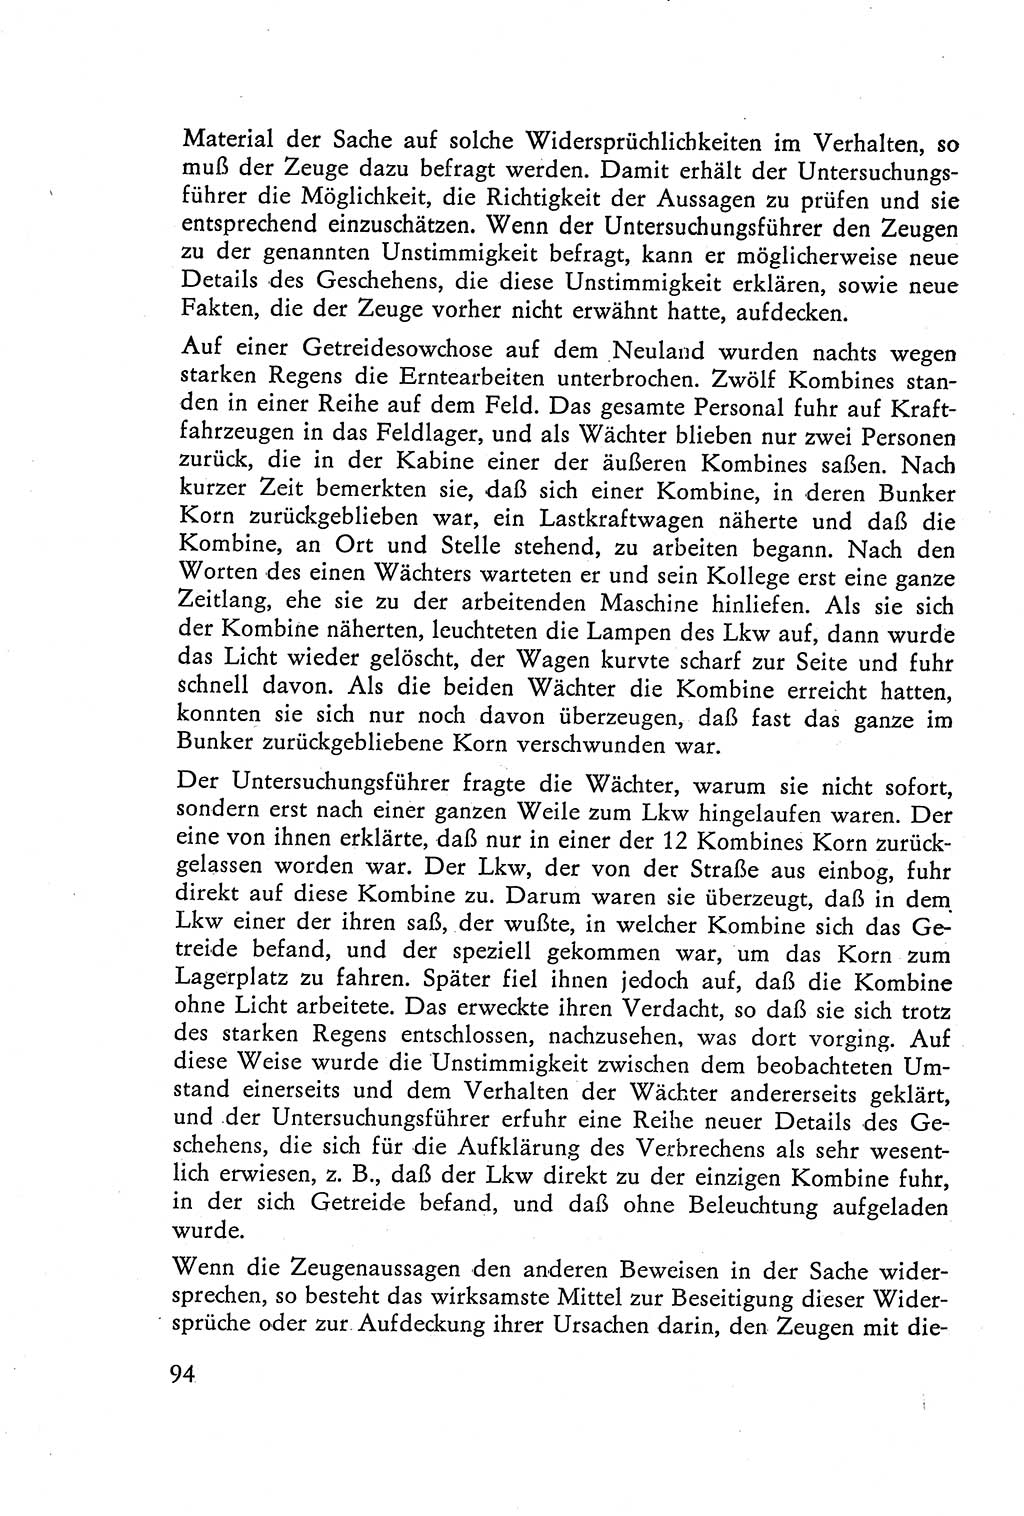 Die Vernehmung [Deutsche Demokratische Republik (DDR)] 1960, Seite 94 (Vern. DDR 1960, S. 94)